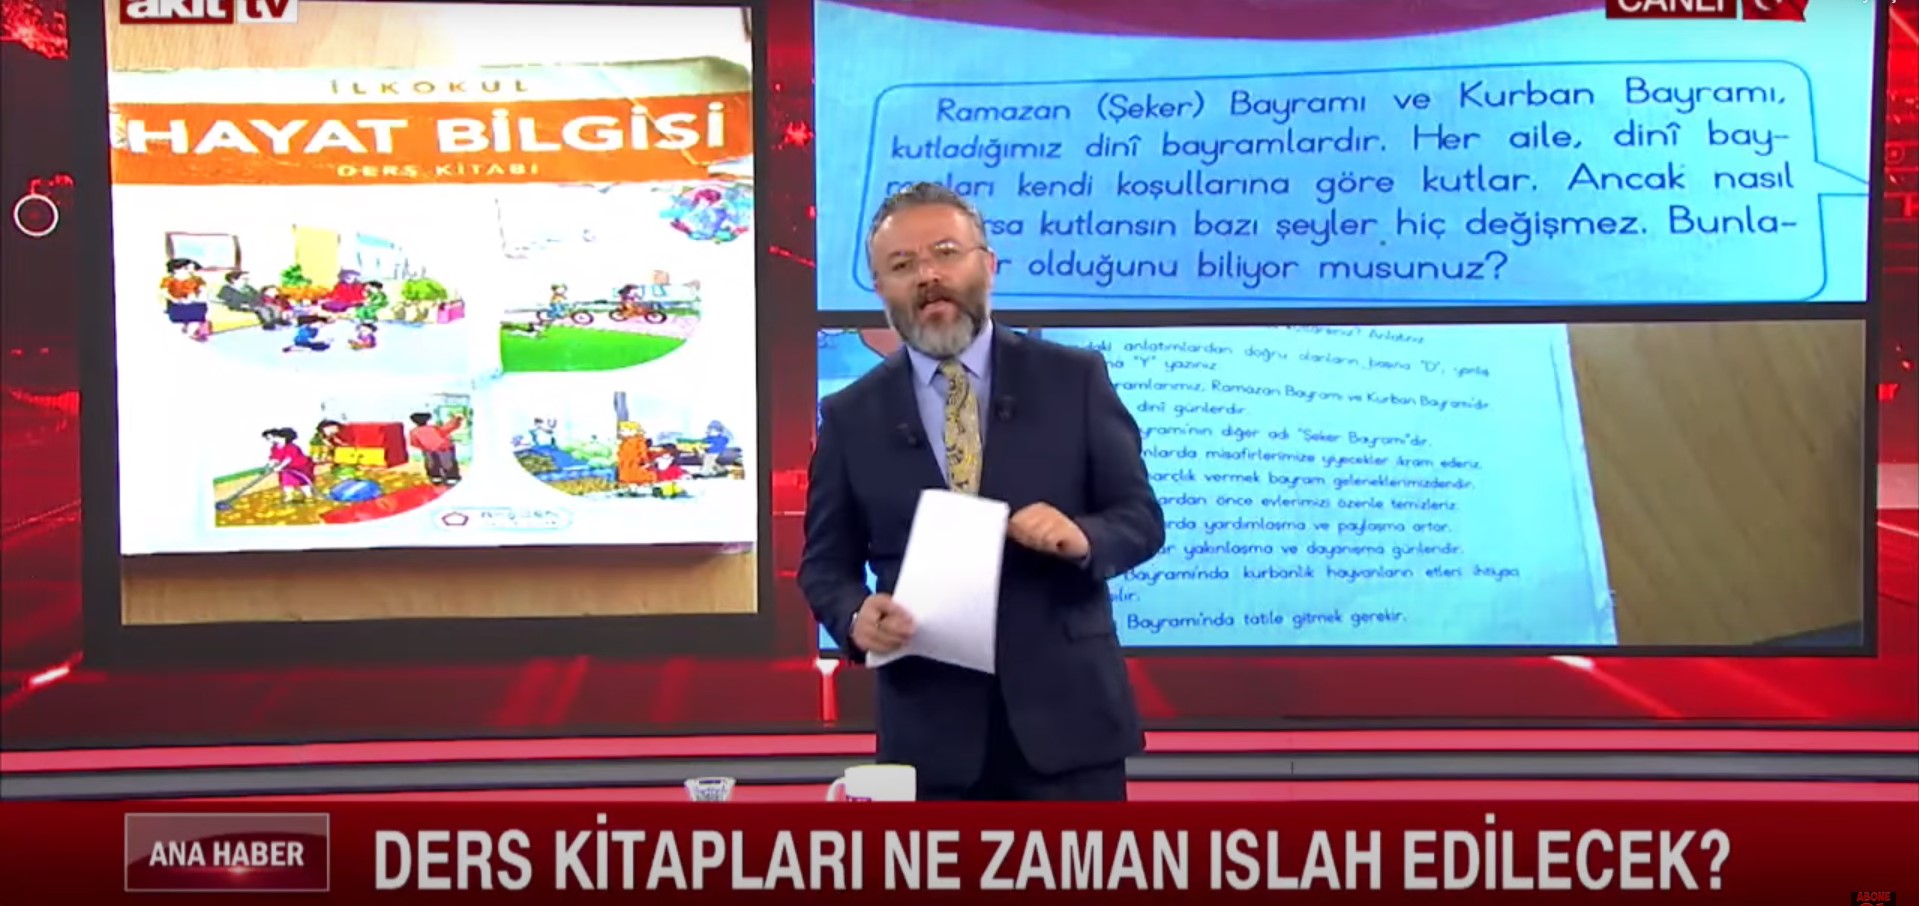 Akit TV sunucusu, ders kitaplarında Ramazan Bayramı'na 'Şeker' bayramı dendiği için canlı yayında sinirden çılgına döndü! Türkiye'nin altından halısı çekildi!